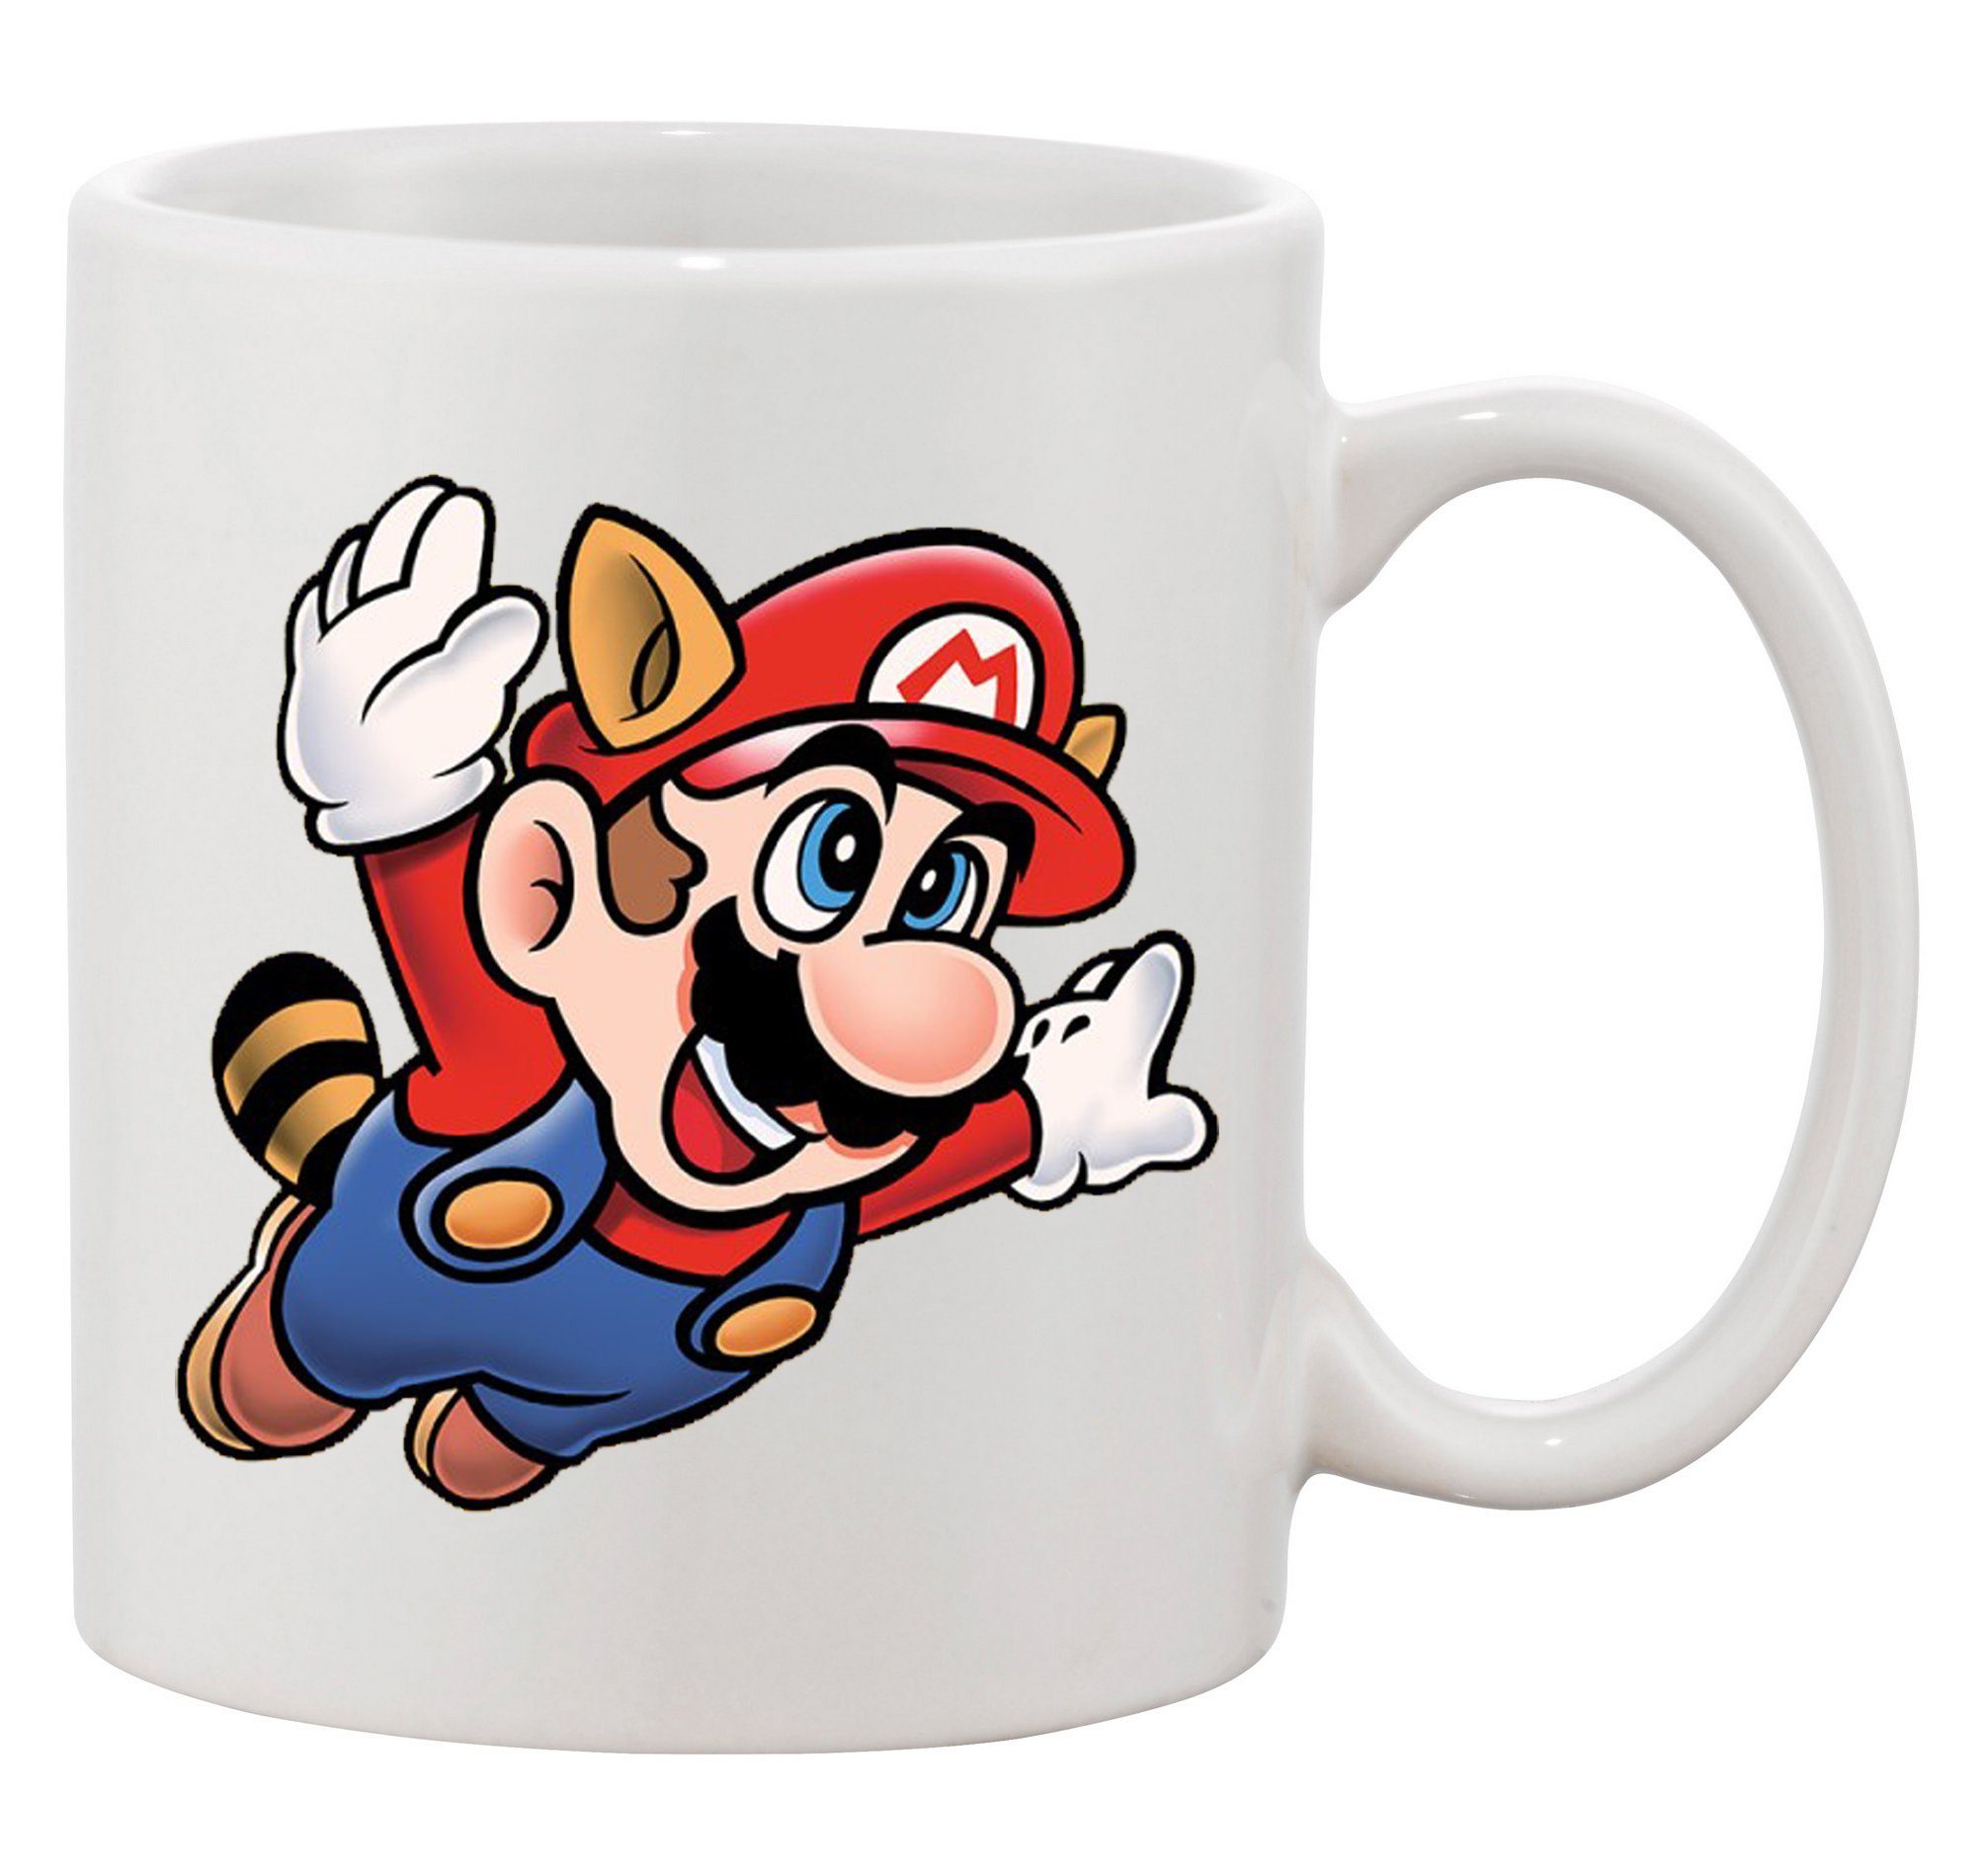 Blondie & Brownie Tasse Super Mario 3 Fligh Nintendo Gamer Gaming Nerd Konsole, Keramik Weiss